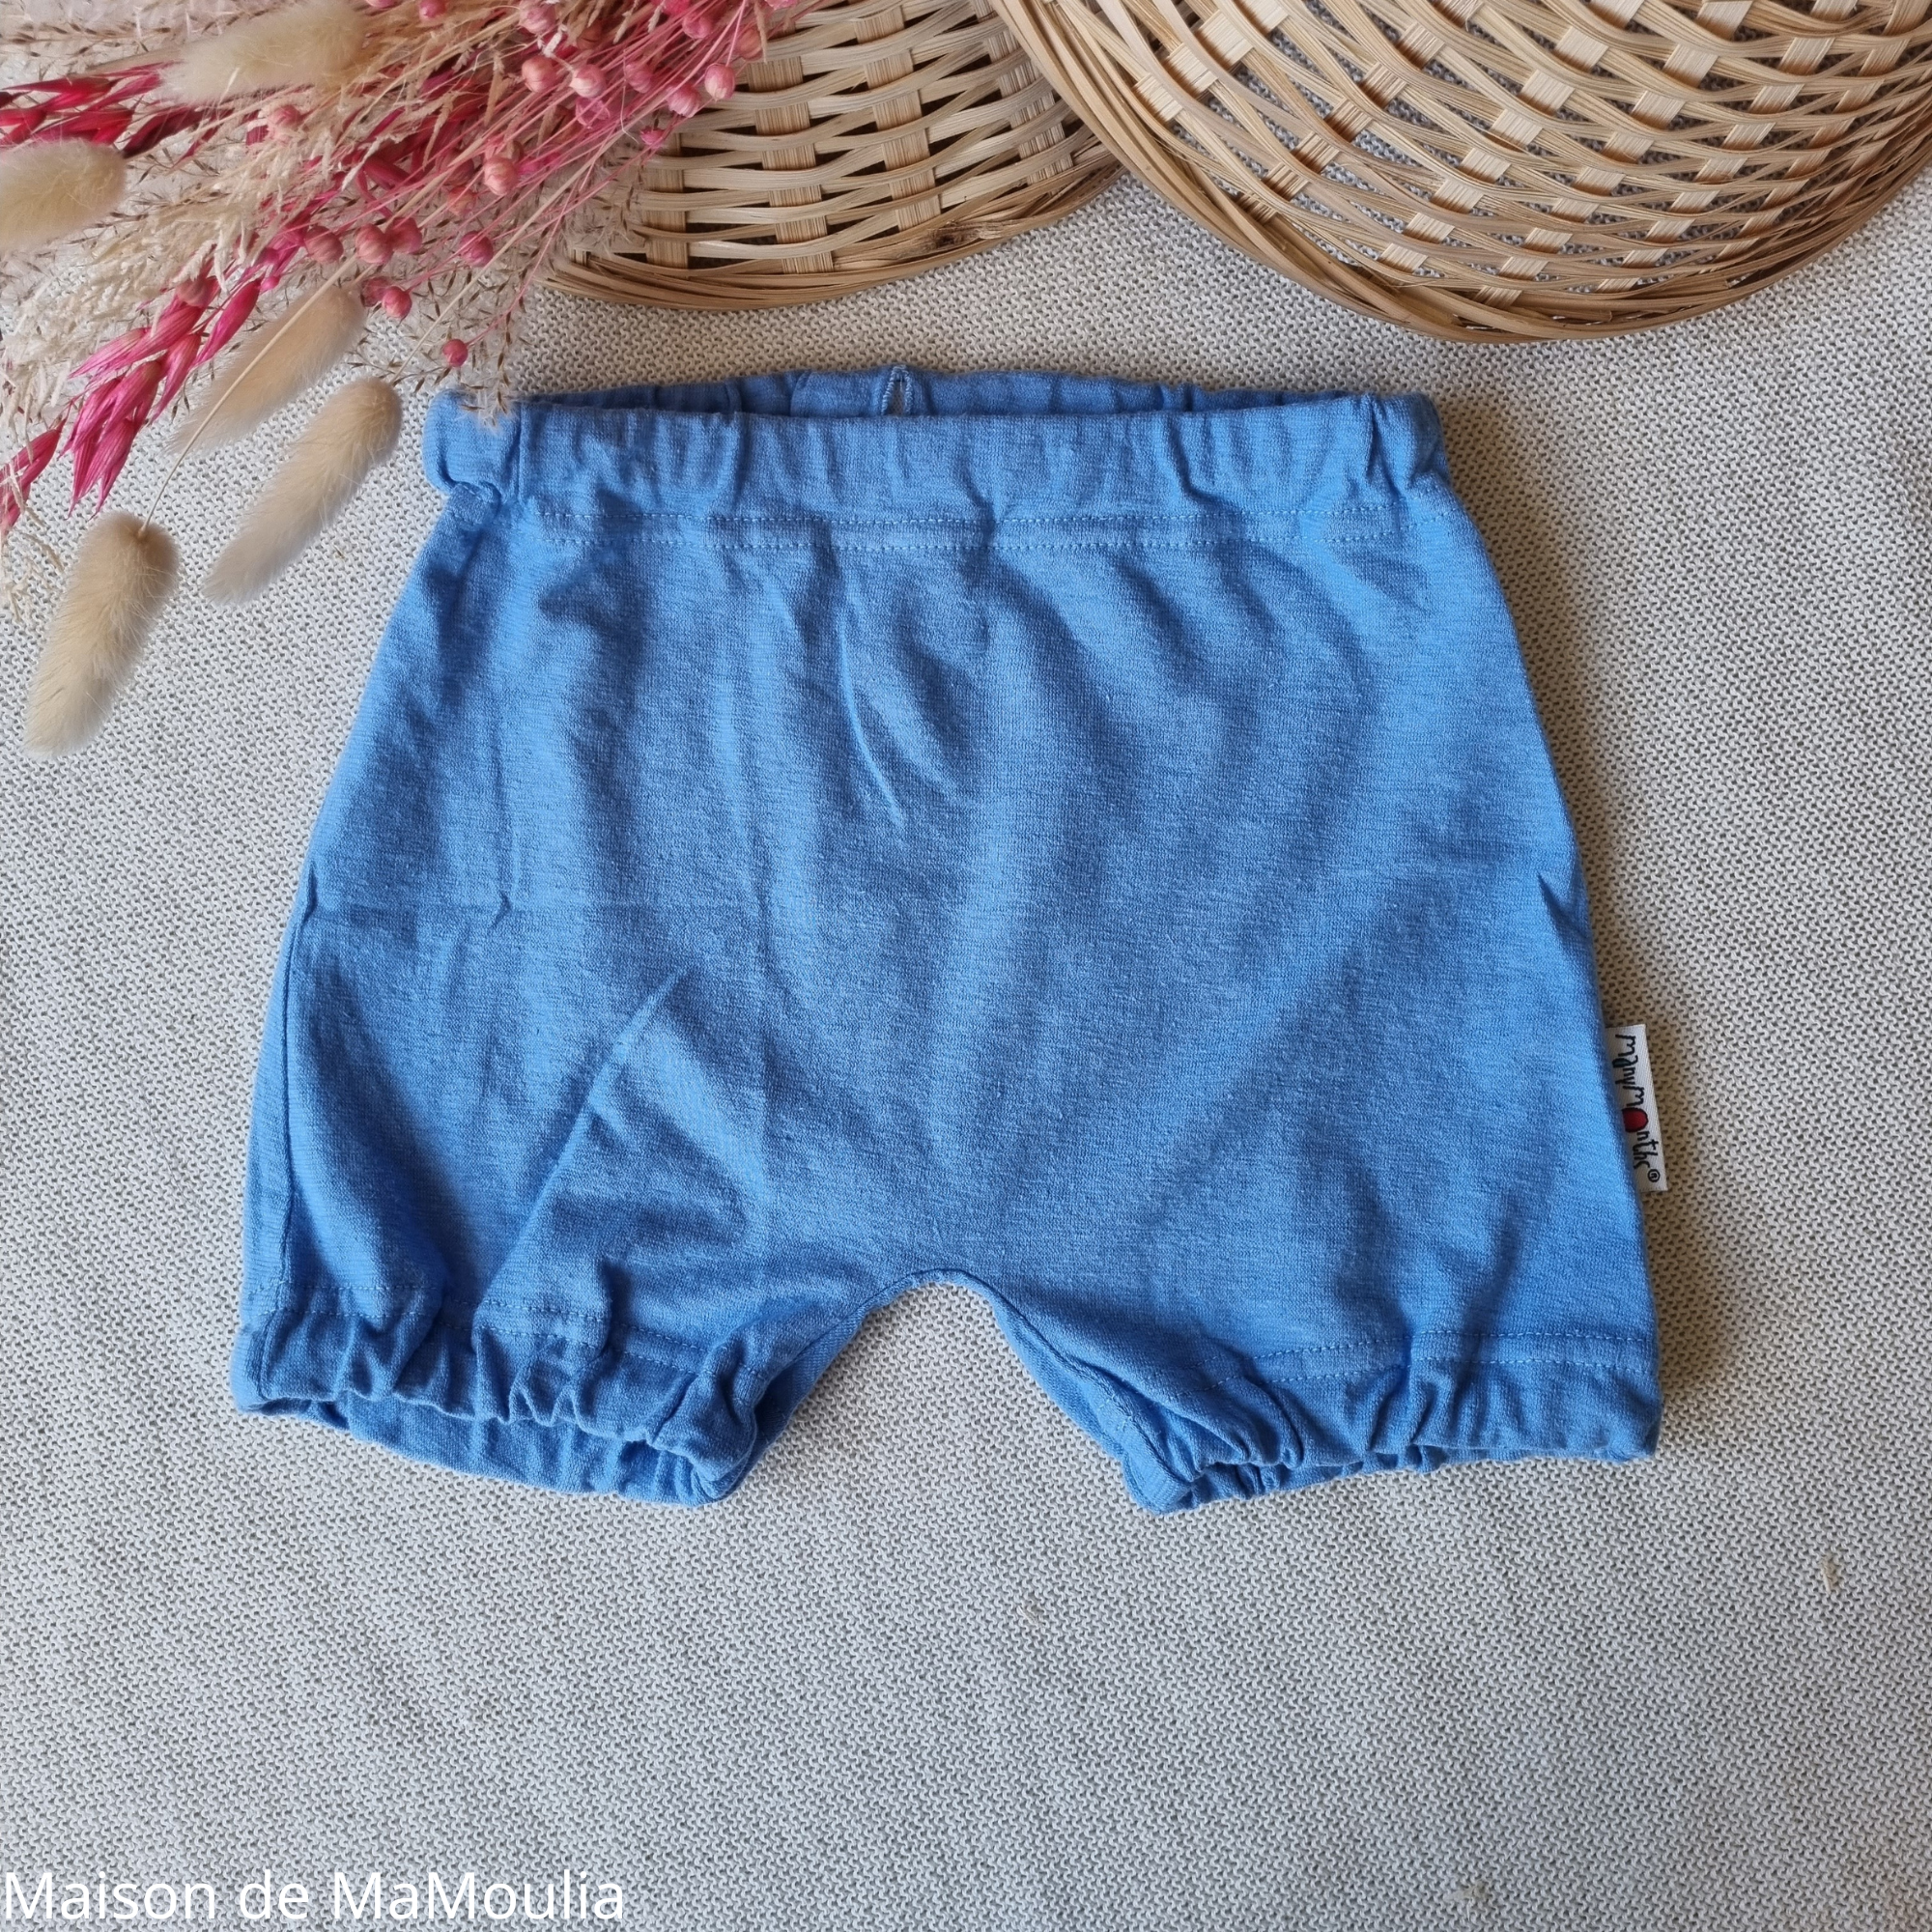 bubble-shorts-coton-bio-chanvre-manymonths-babyidea-maison-de-mamoulia-bleu-clair-